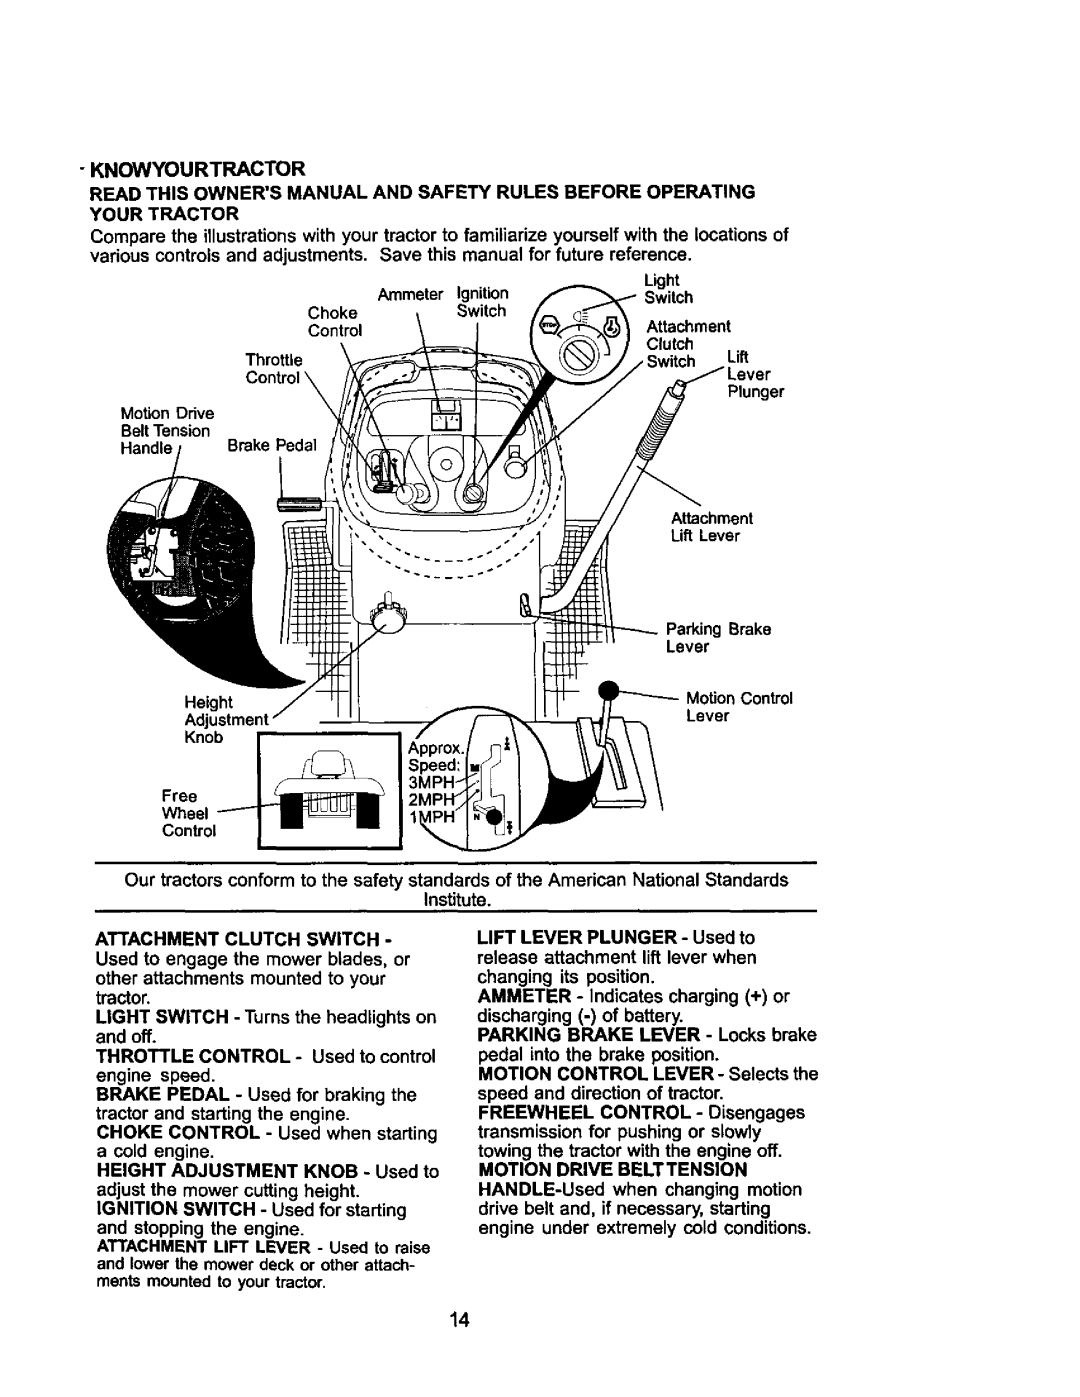 Craftsman 917.275021 manual Knowyourtractor 